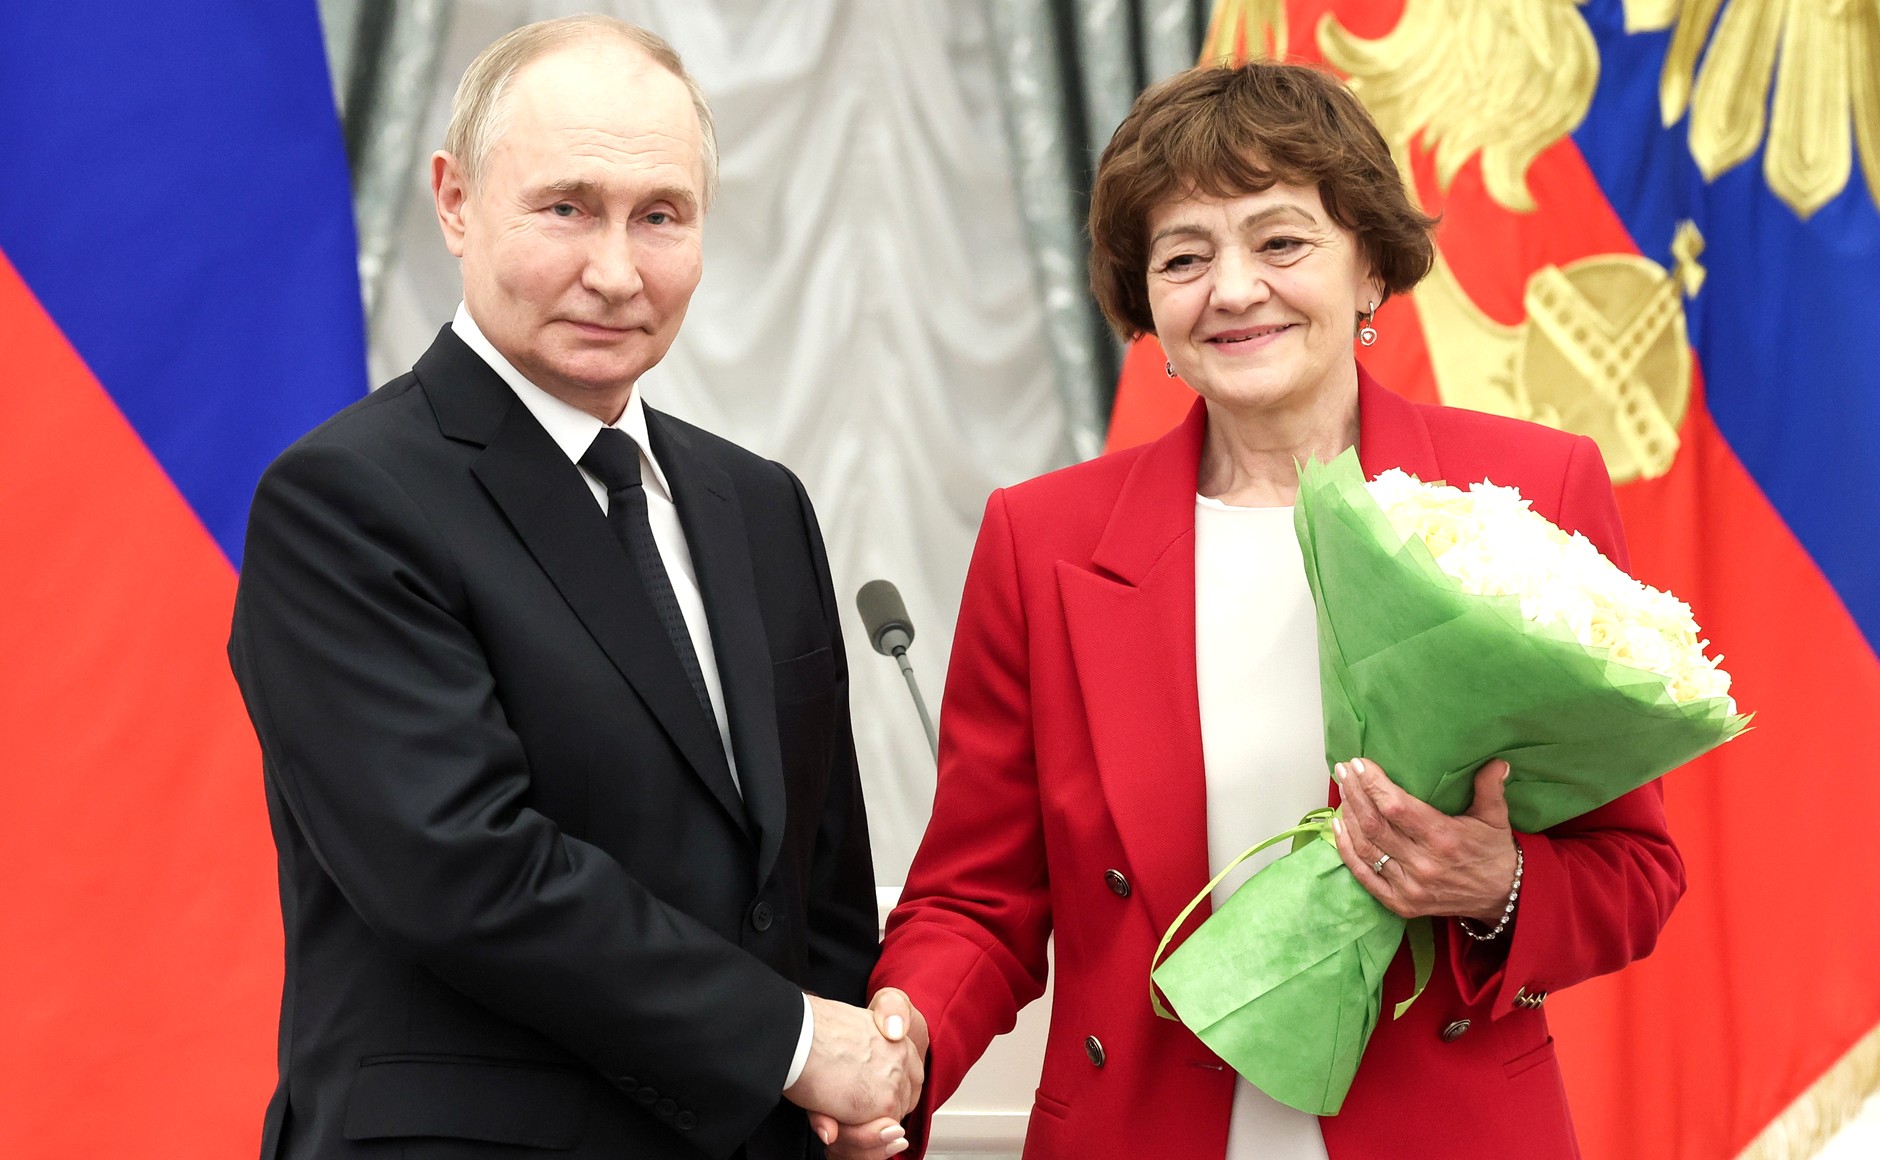 Мать-героиня, врач и химик: Владимир Путин подписал указ о награждении 5 жительниц Кузбасса